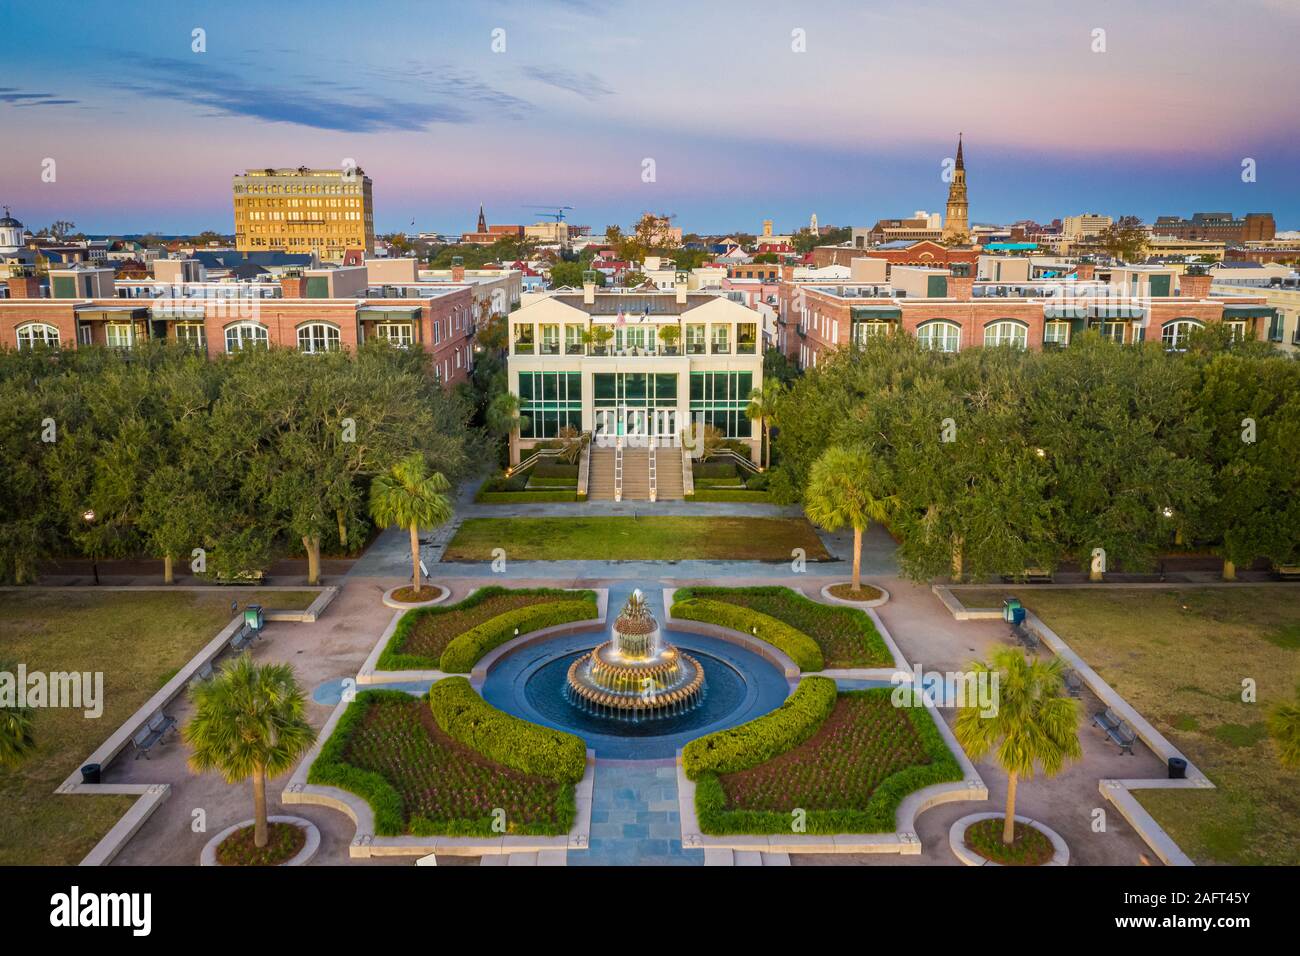 Charleston ist die älteste und größte Stadt im US-Bundesstaat South Carolina, bekannt für seine grosse Rolle in der amerikanischen Sklavenhandel. Die Stadt ist der c Stockfoto